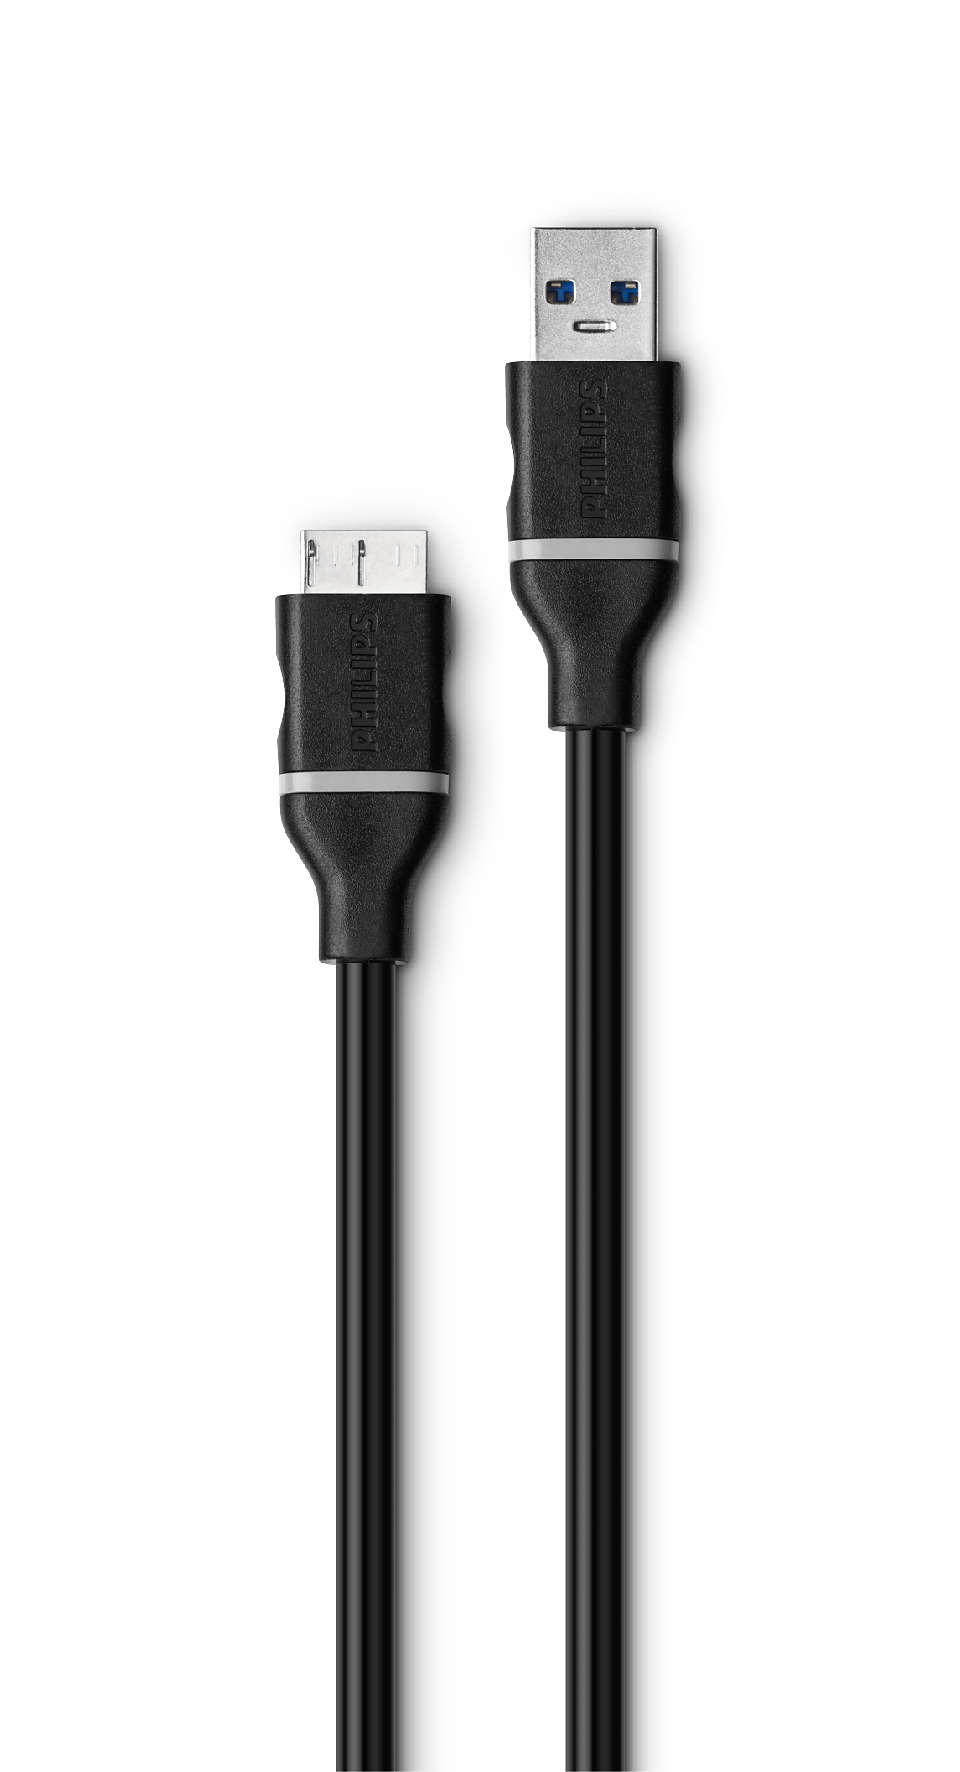 Chargez un smartphone ou autre via une prise micro-USB